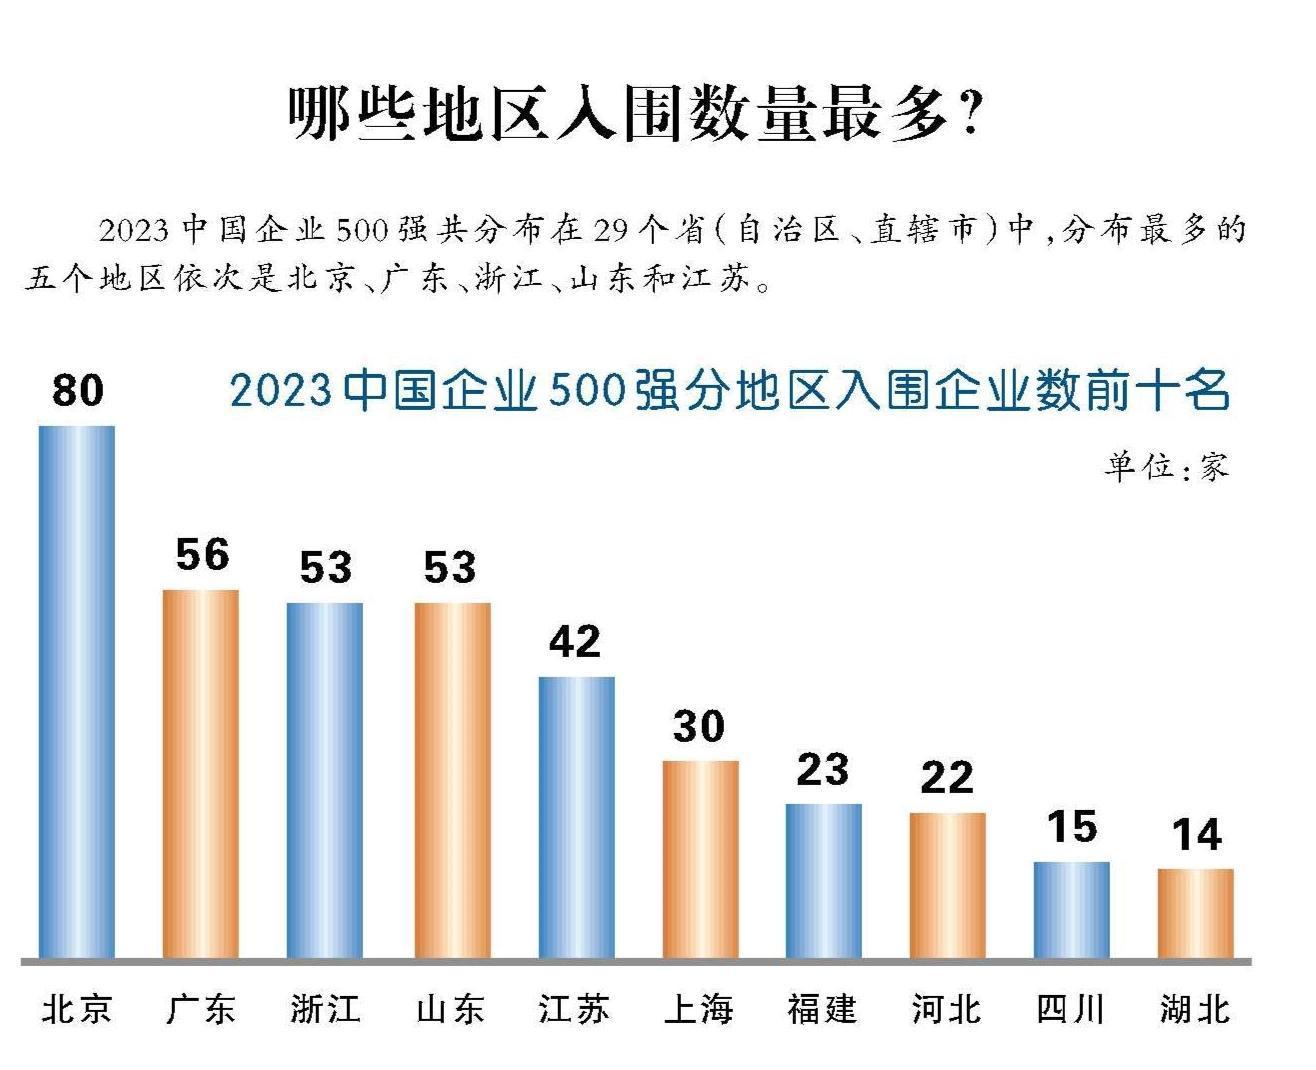 2023中国企业500强 铜陵有色、海螺、奇瑞等皖企上榜1.jpg